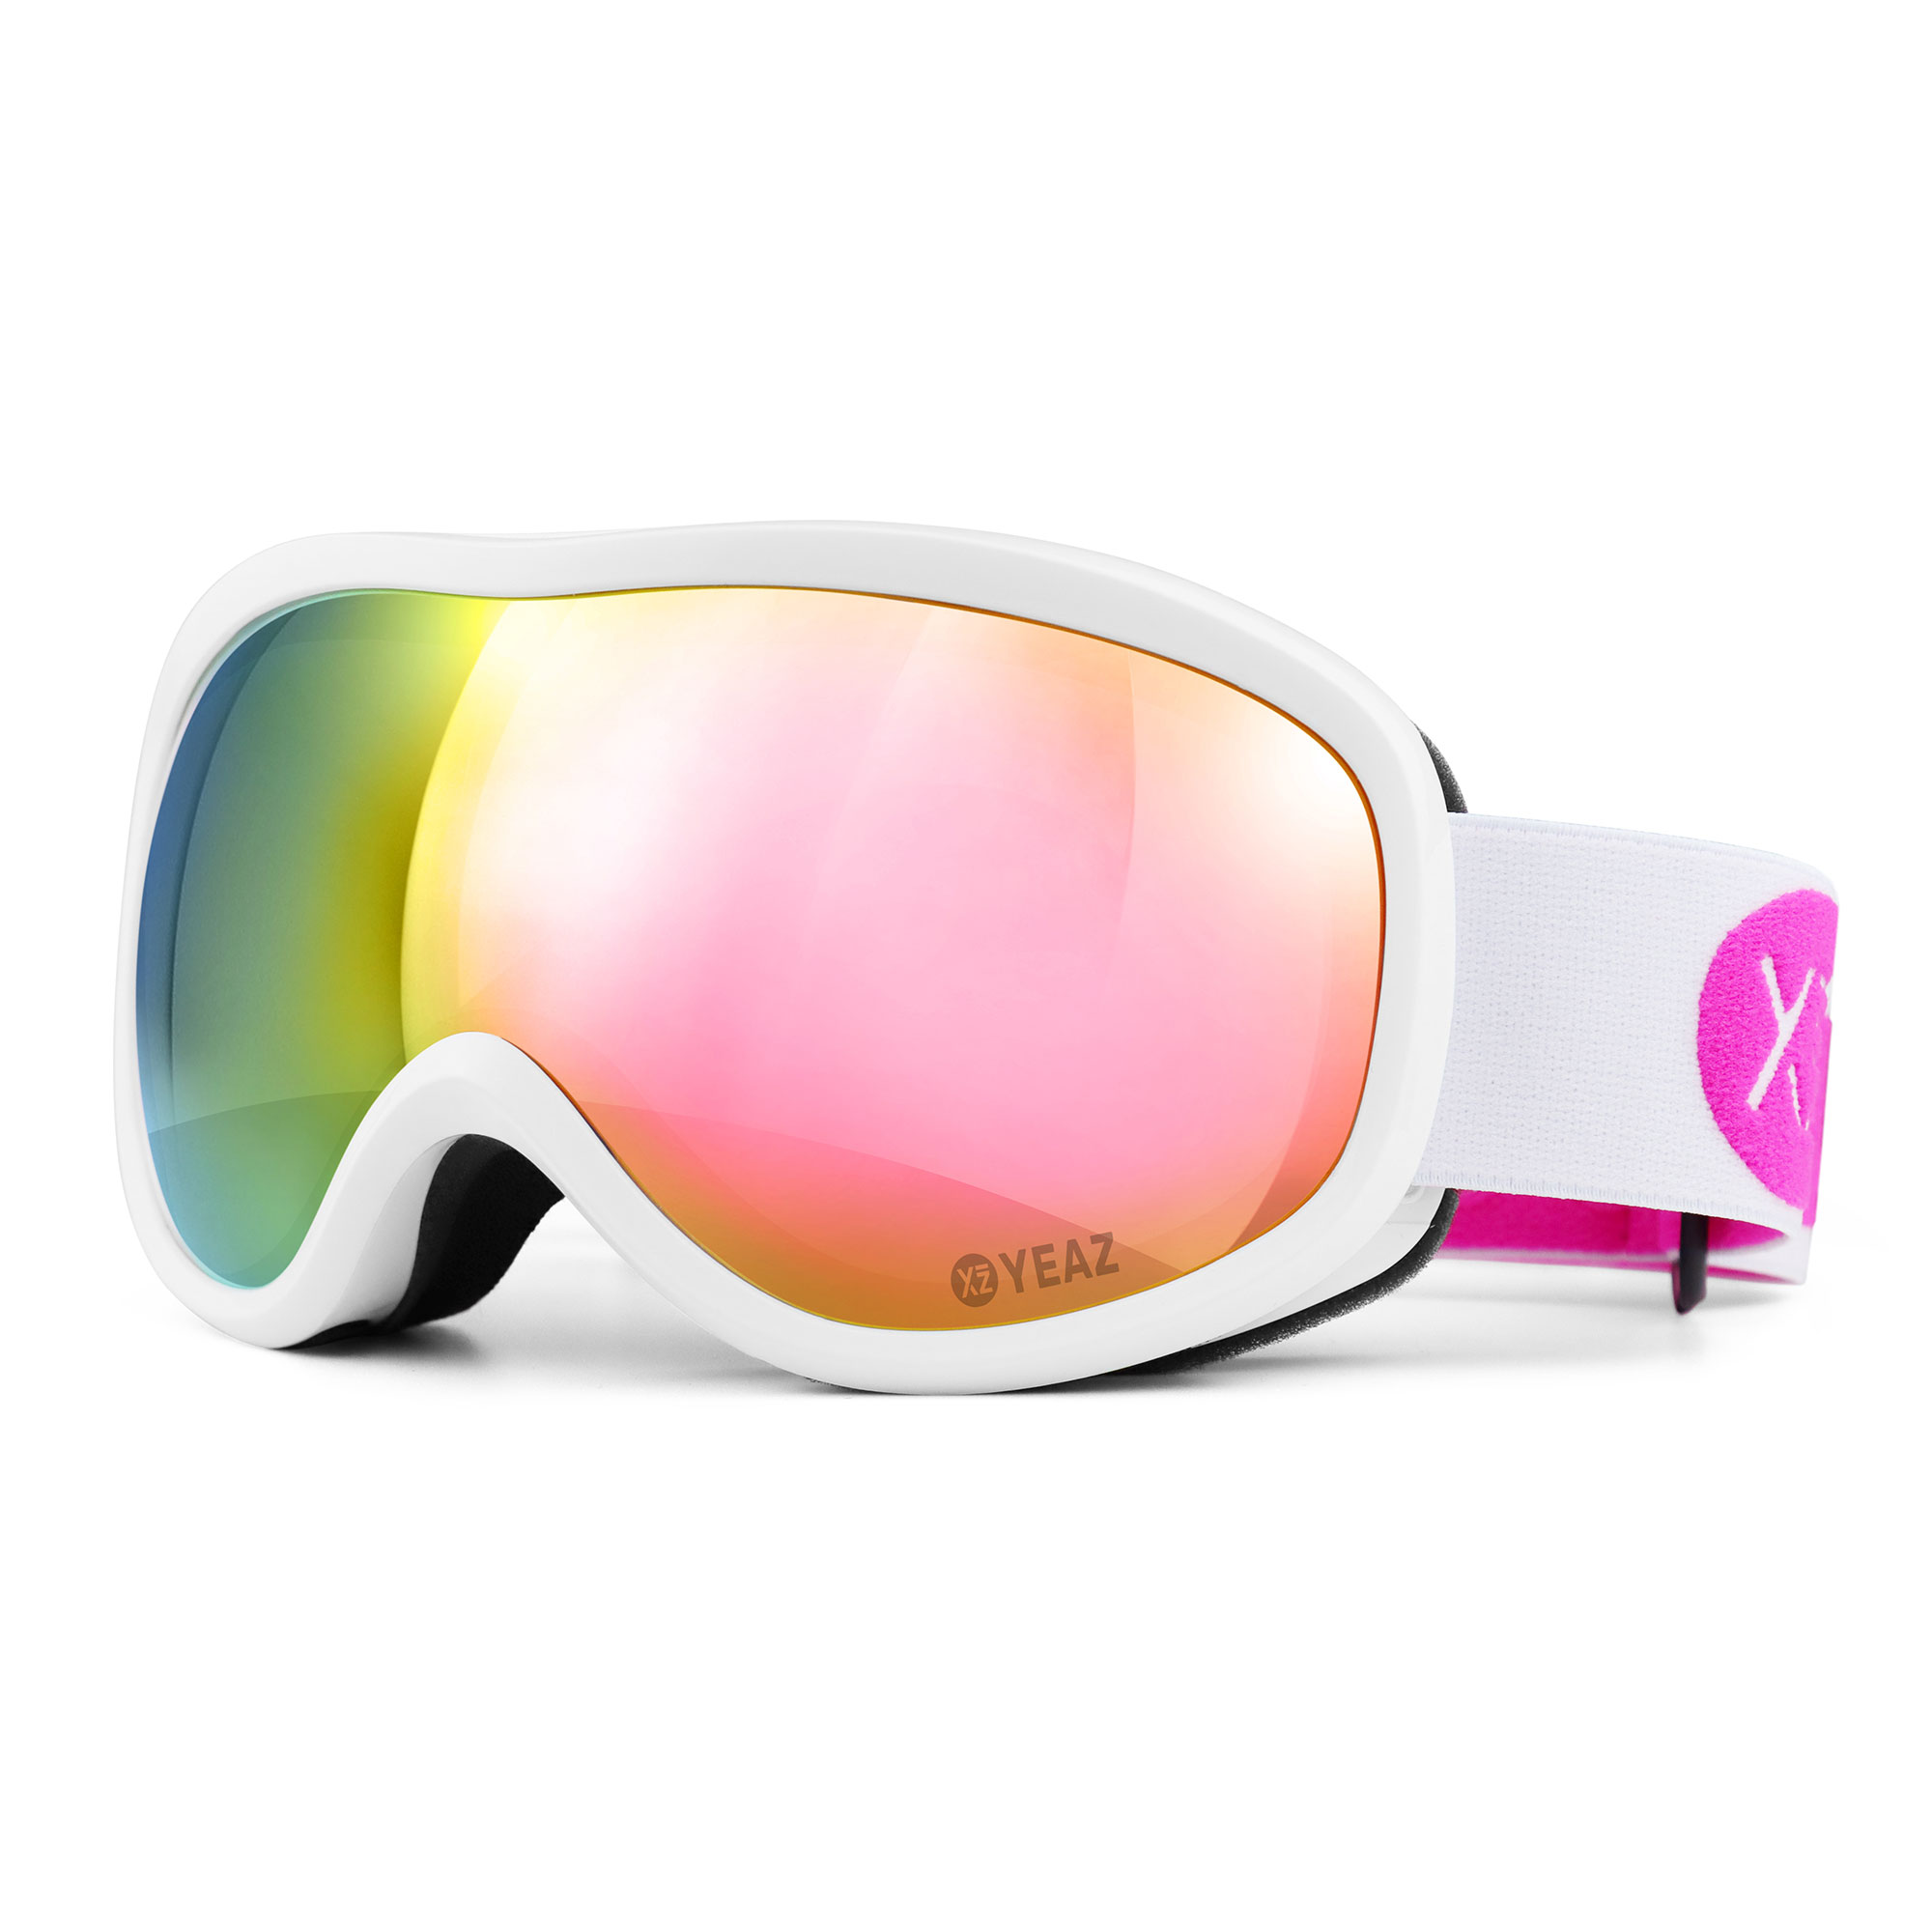 Achetez Hiver Extérieur Cyclisme Demi-visage Masque de Ski Écharpe - Rose  de Chine